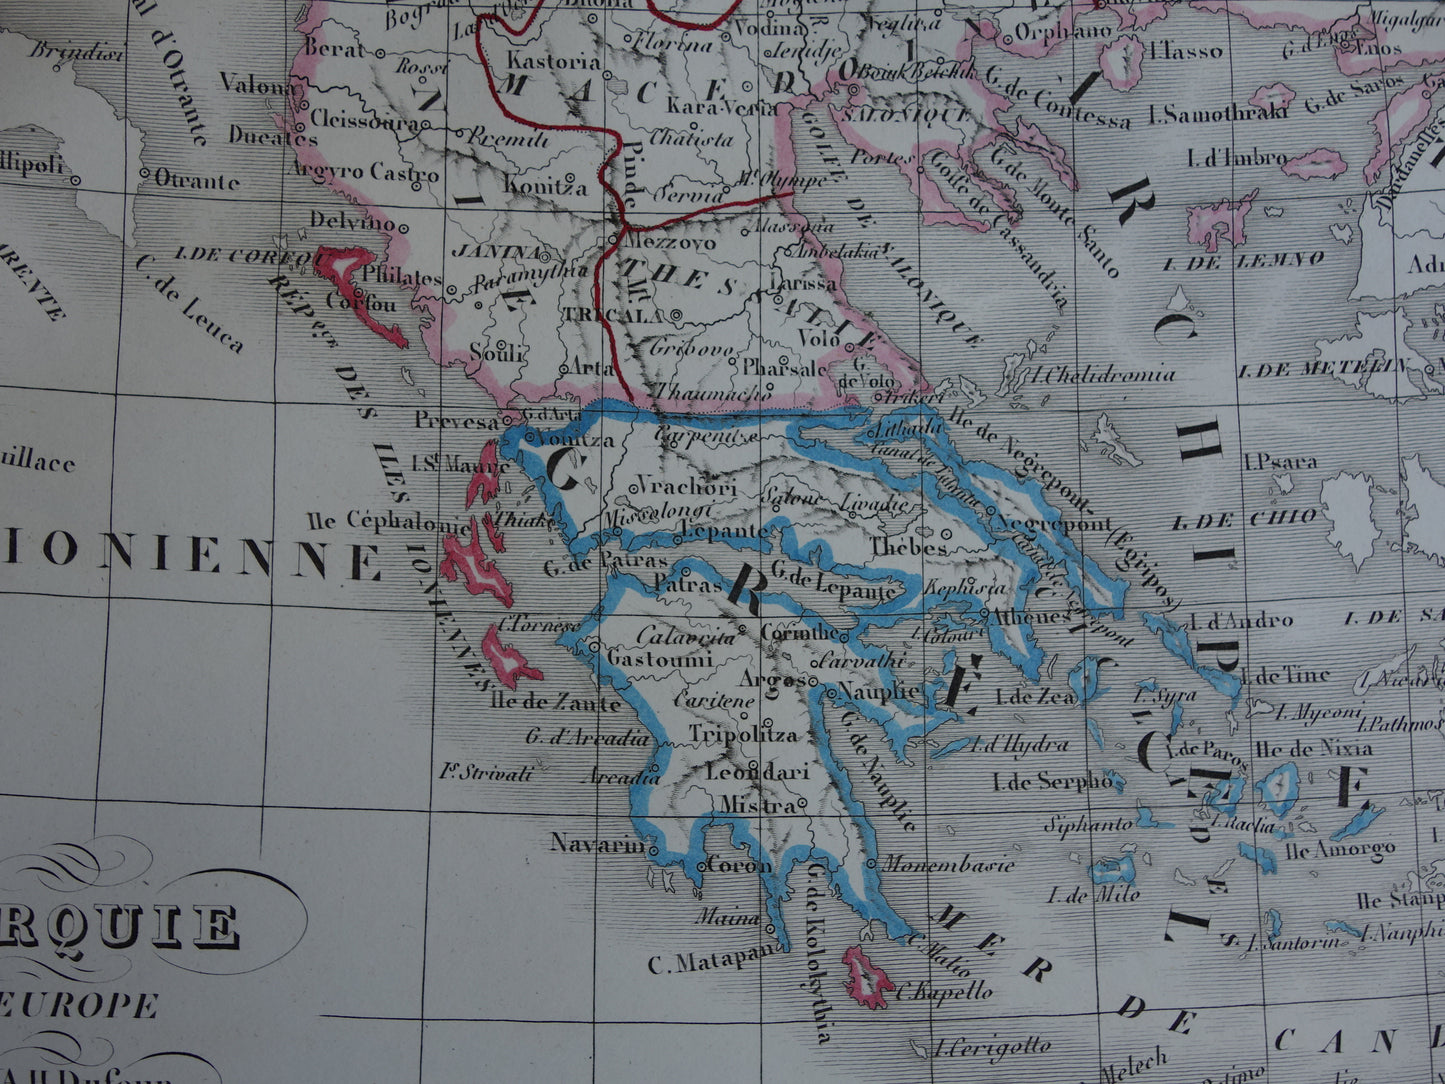 Oude kaart van Europees Turkije en Griekenland uit 1849 originele 170+ jaar oude Franse landkaart Servië Bulgarije Roemenië Balkan Ottomaanse Rijk